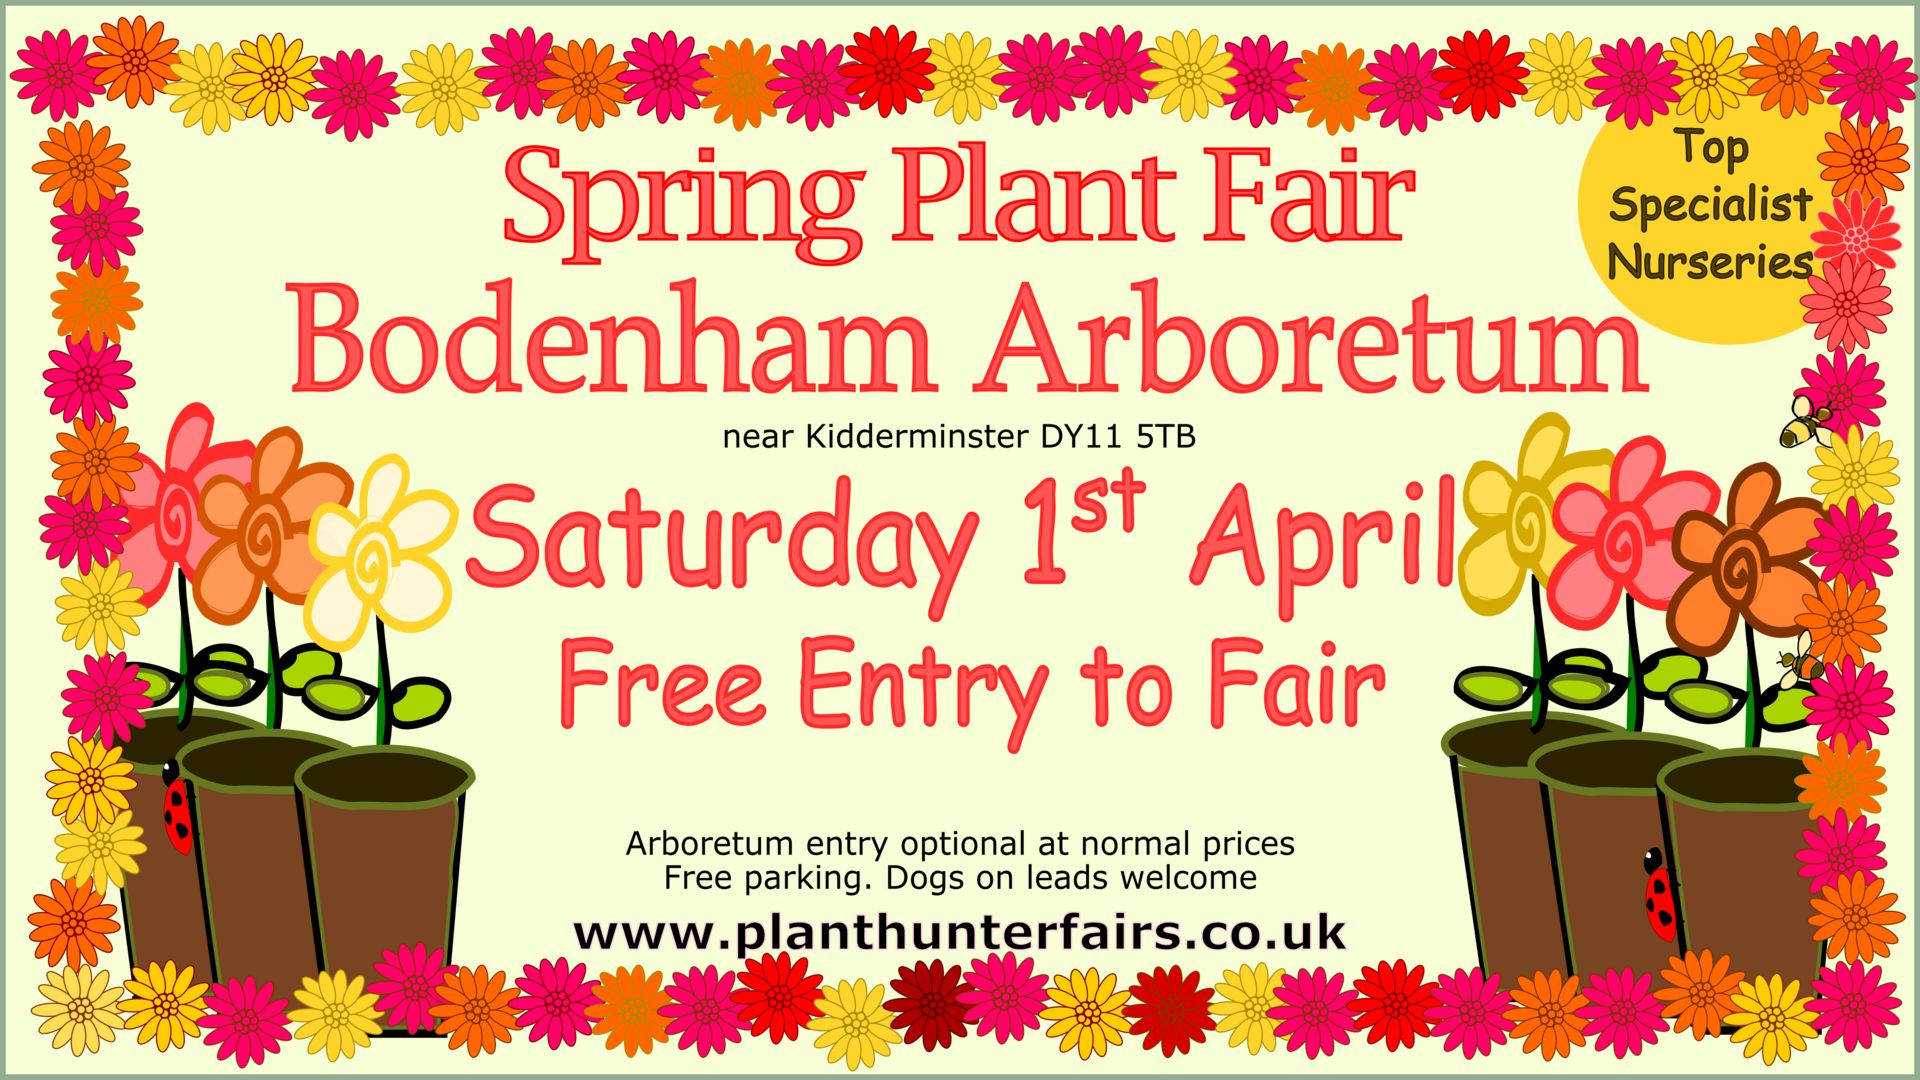 Spring Plant Hunters' Fair at Bodenham Arboretum on Saturday 1st April